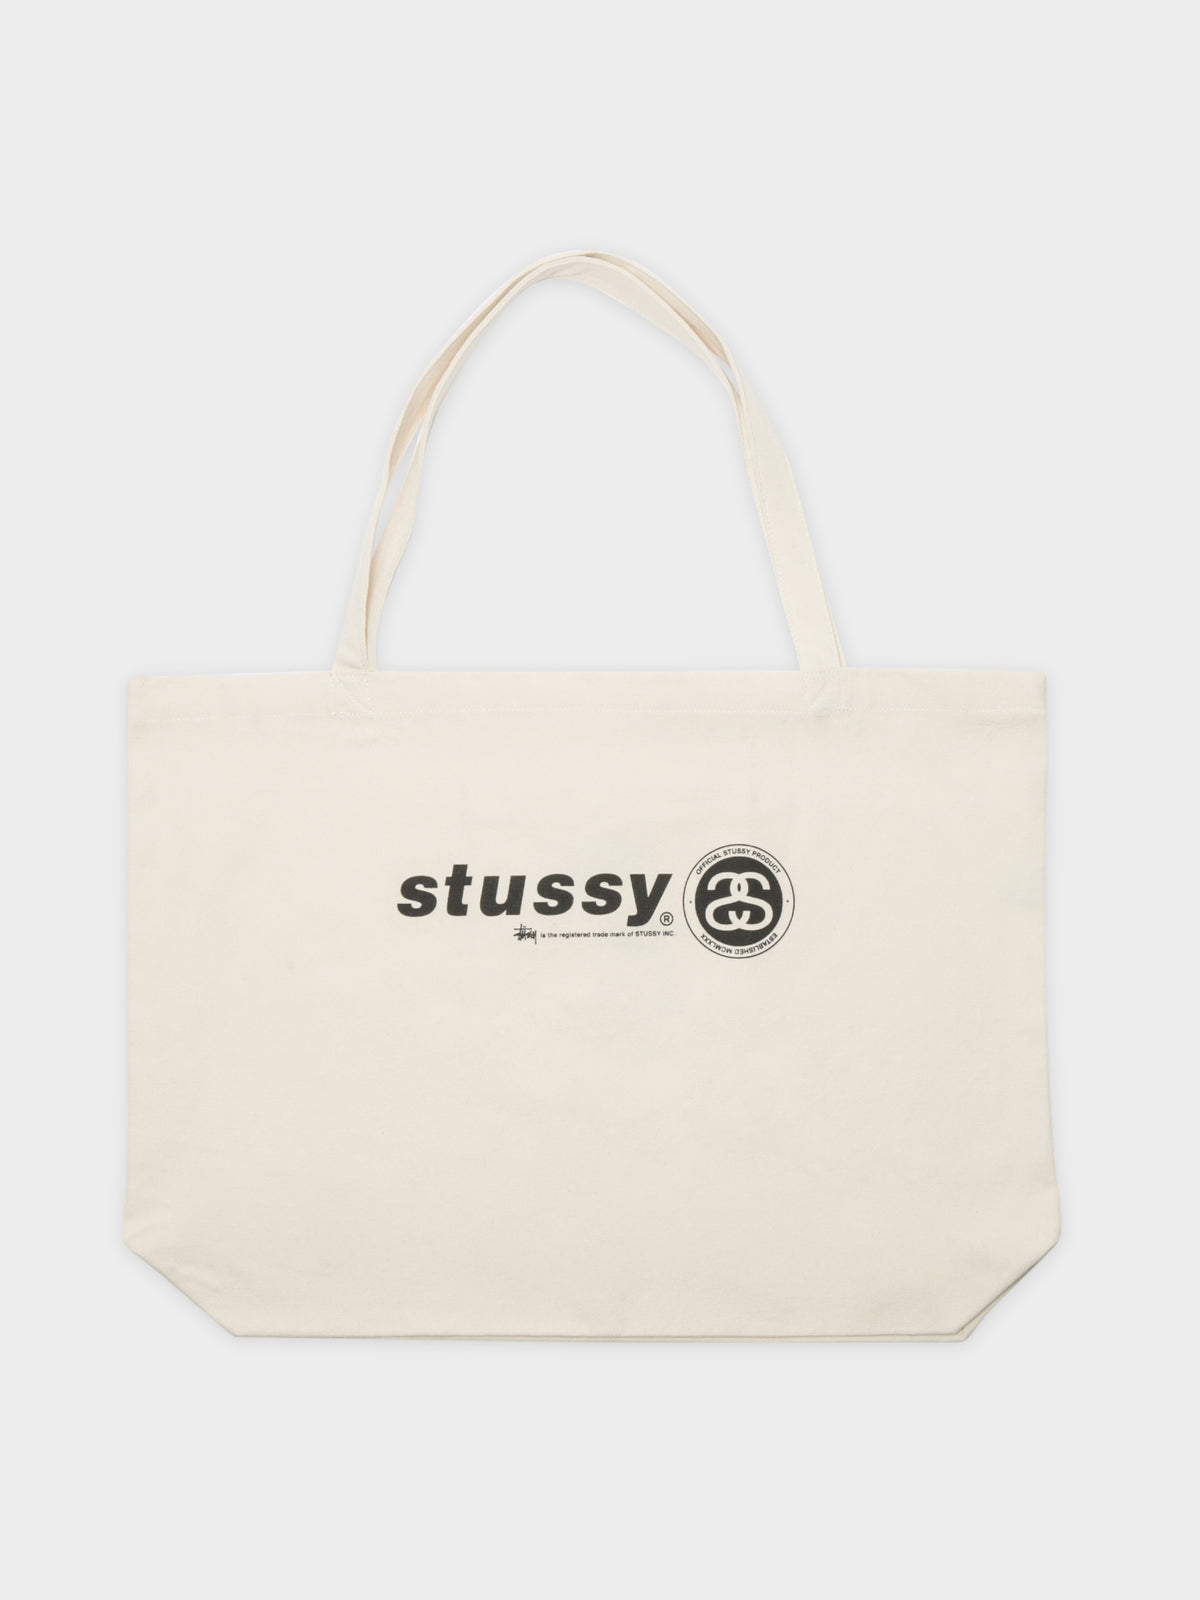 Stussy Tote Bag in White